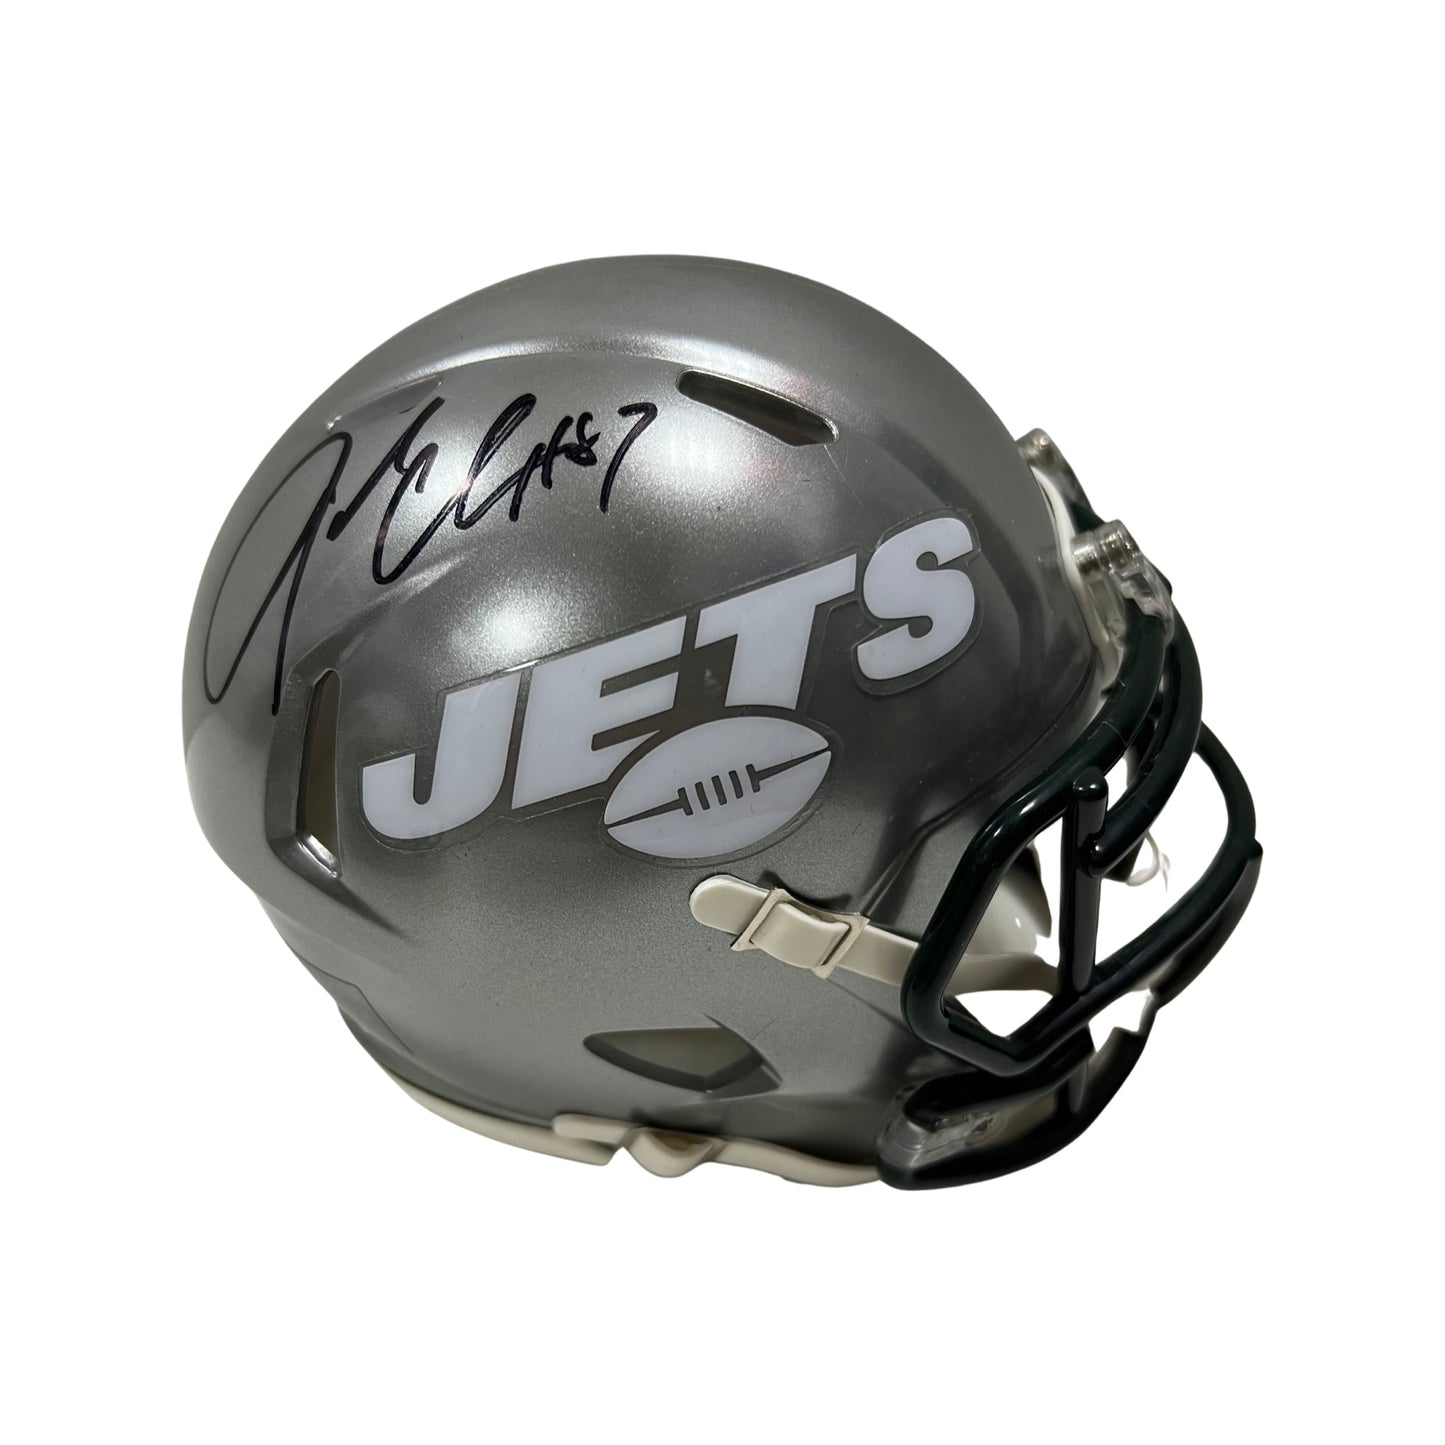 Laveranues Coles Autographed New York Jets Flash Mini Helmet Steiner CX